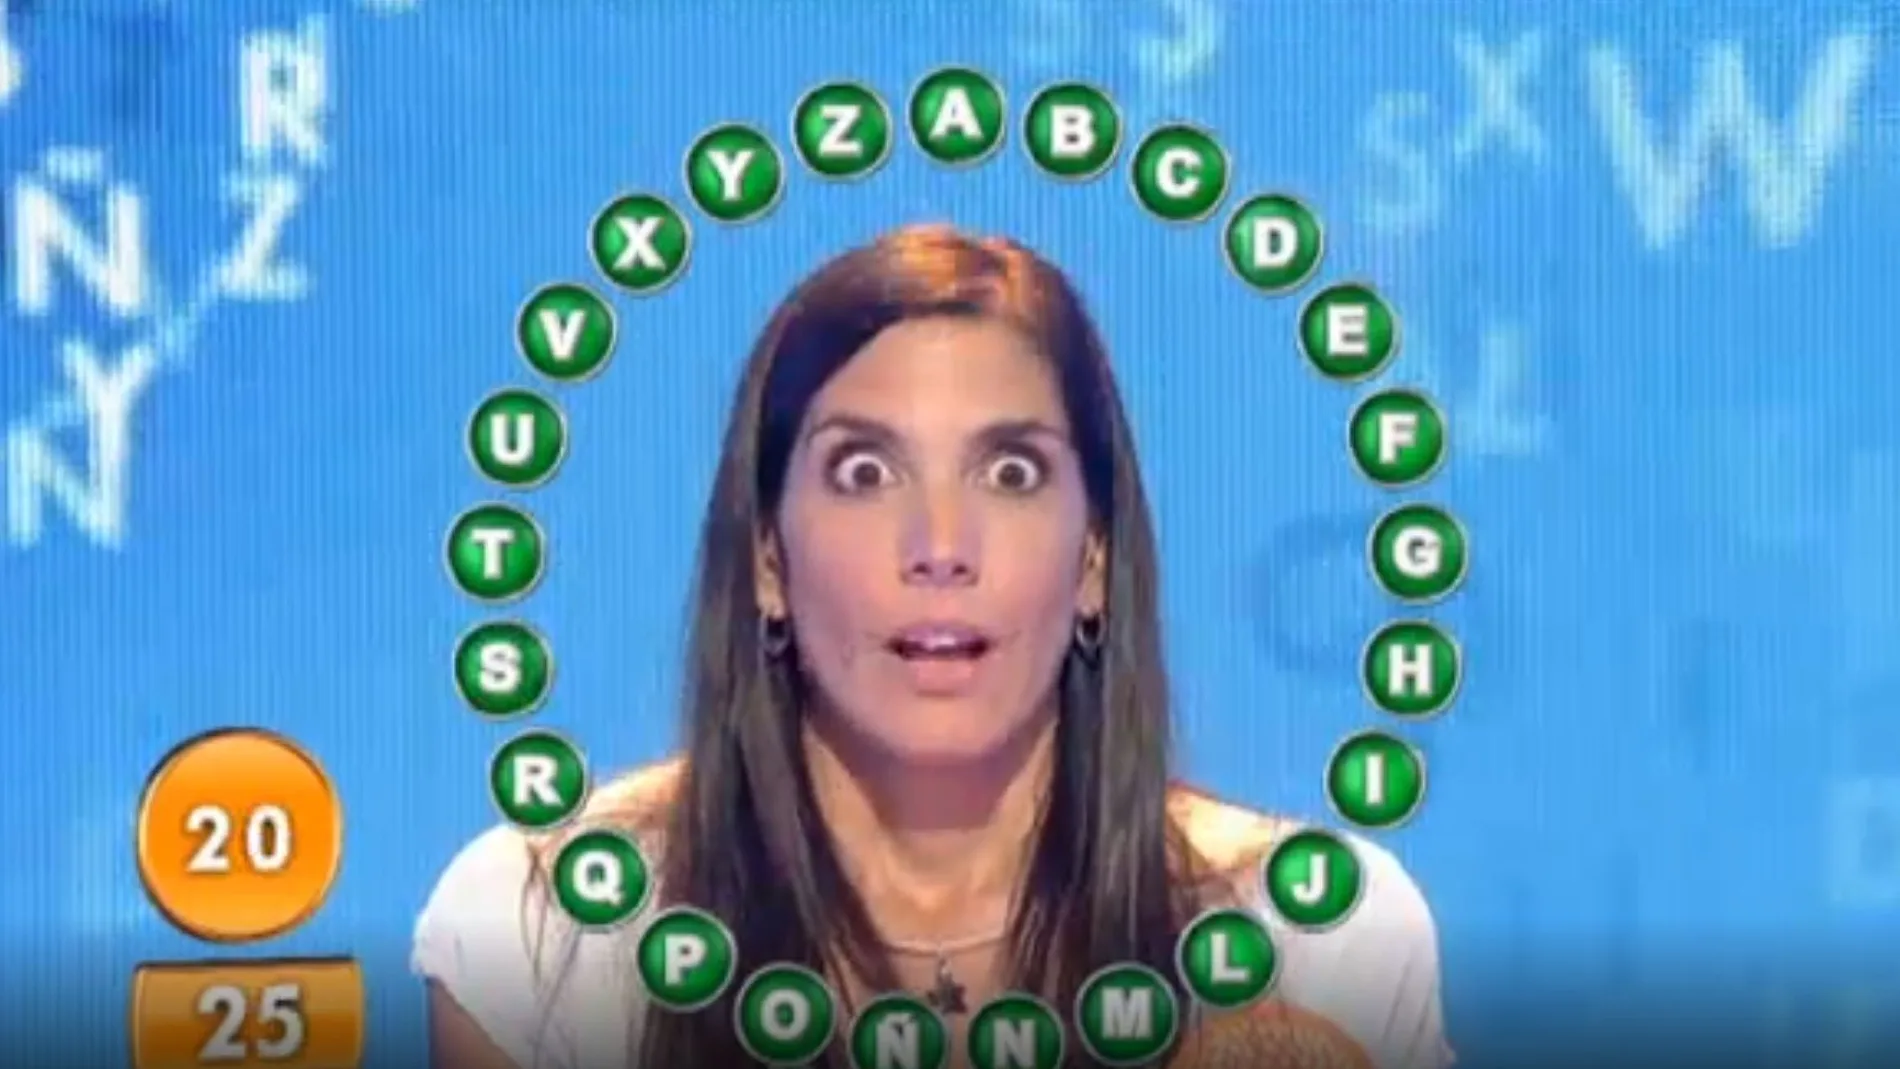 La reacción de Susana García al ganar el bote de 'Pasapalabra' en 2015